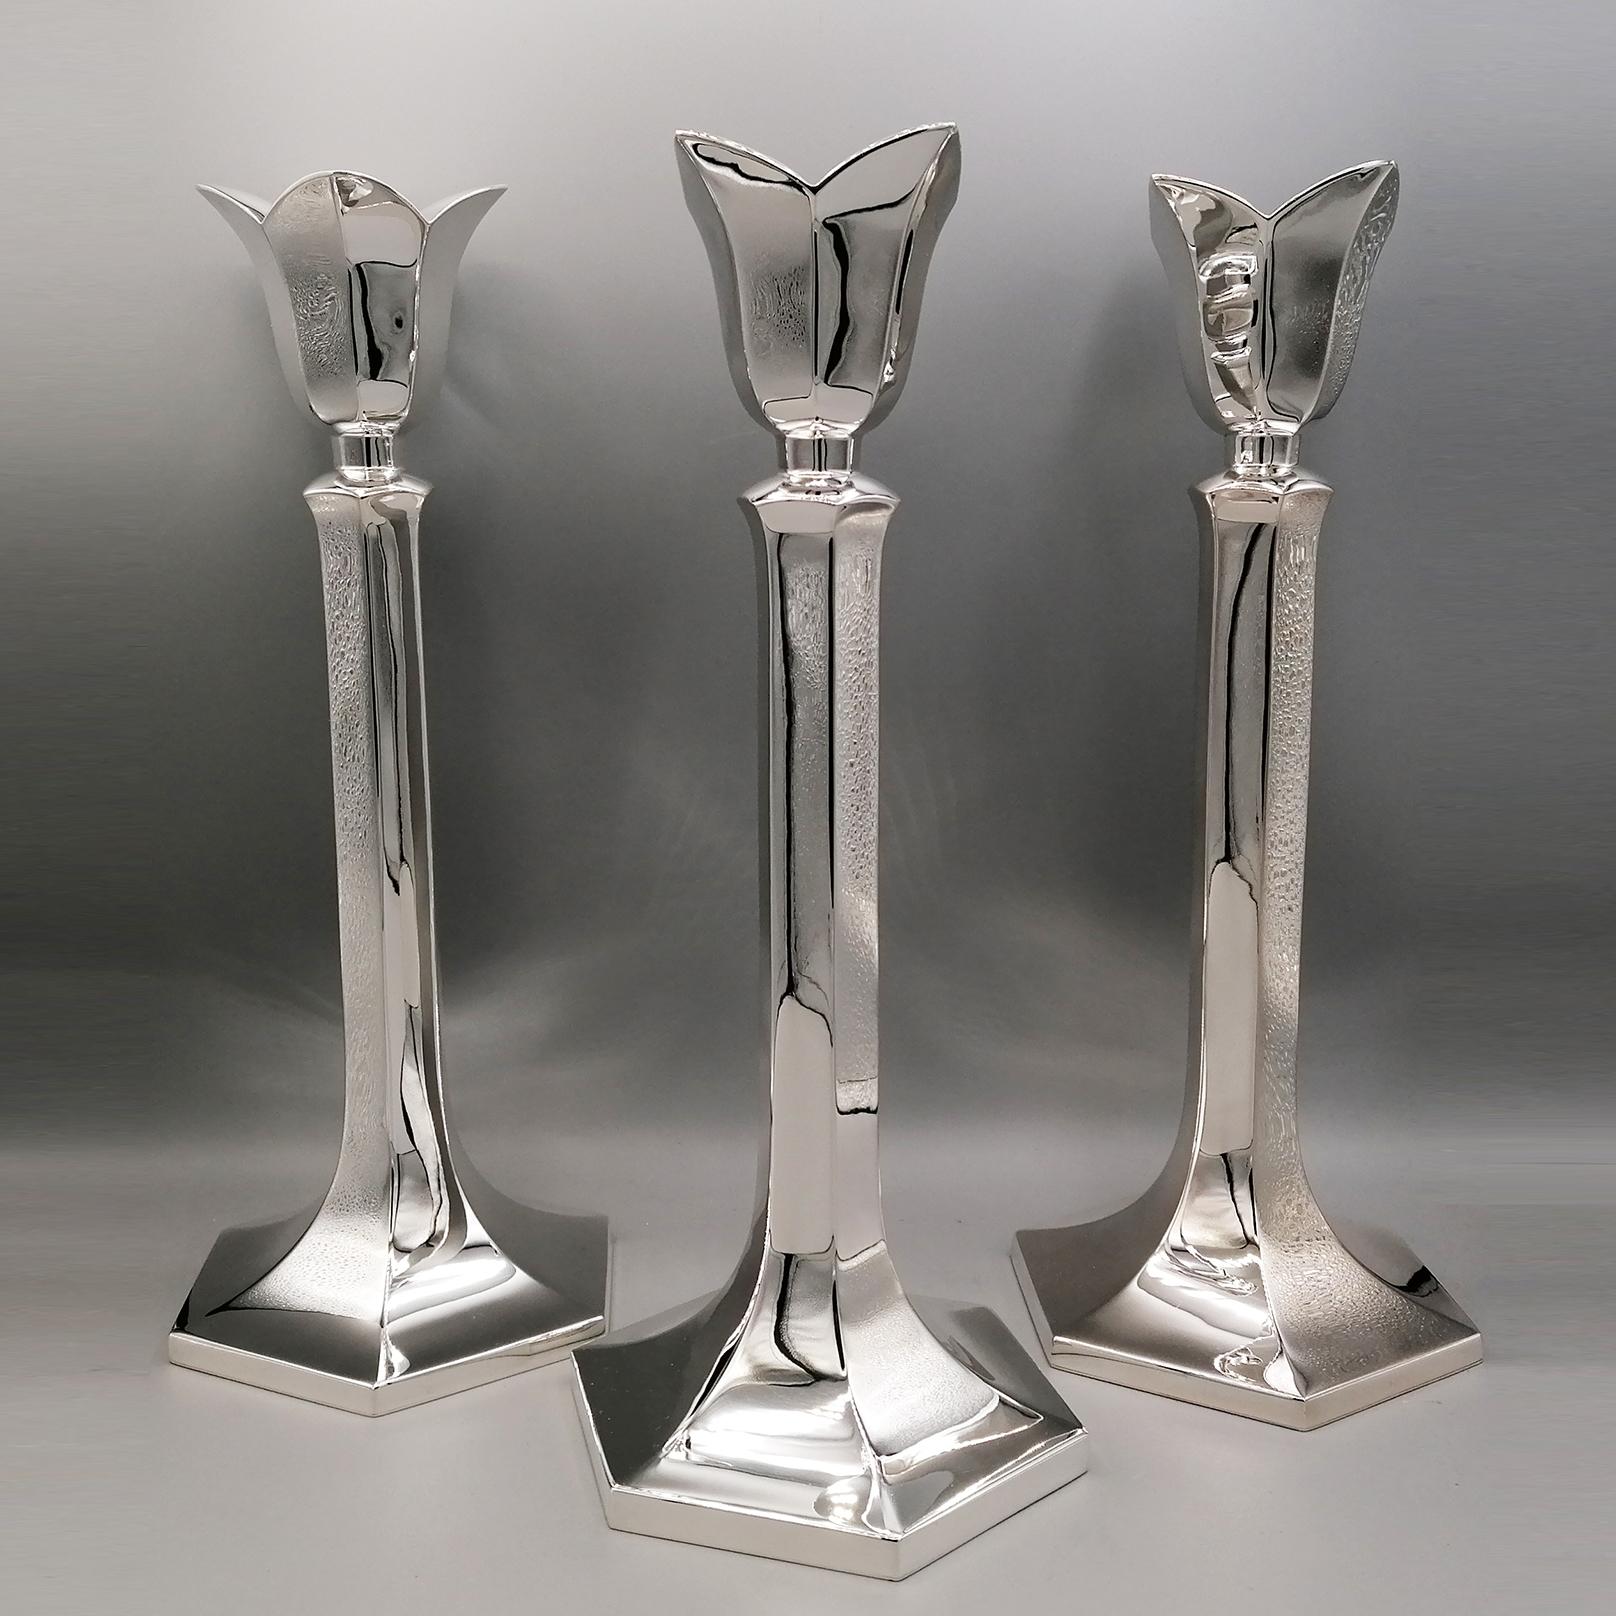 Vollständig handgefertigtes Trio von Kerzenhaltern aus massivem 800er Silber.
Die Kerzenhalter wurden vollständig aus Silberblech handgefertigt, um ihnen eine sechseckige Form zu geben.
Die Basis ist breit und imposant, um ihnen mehr Stabilität zu